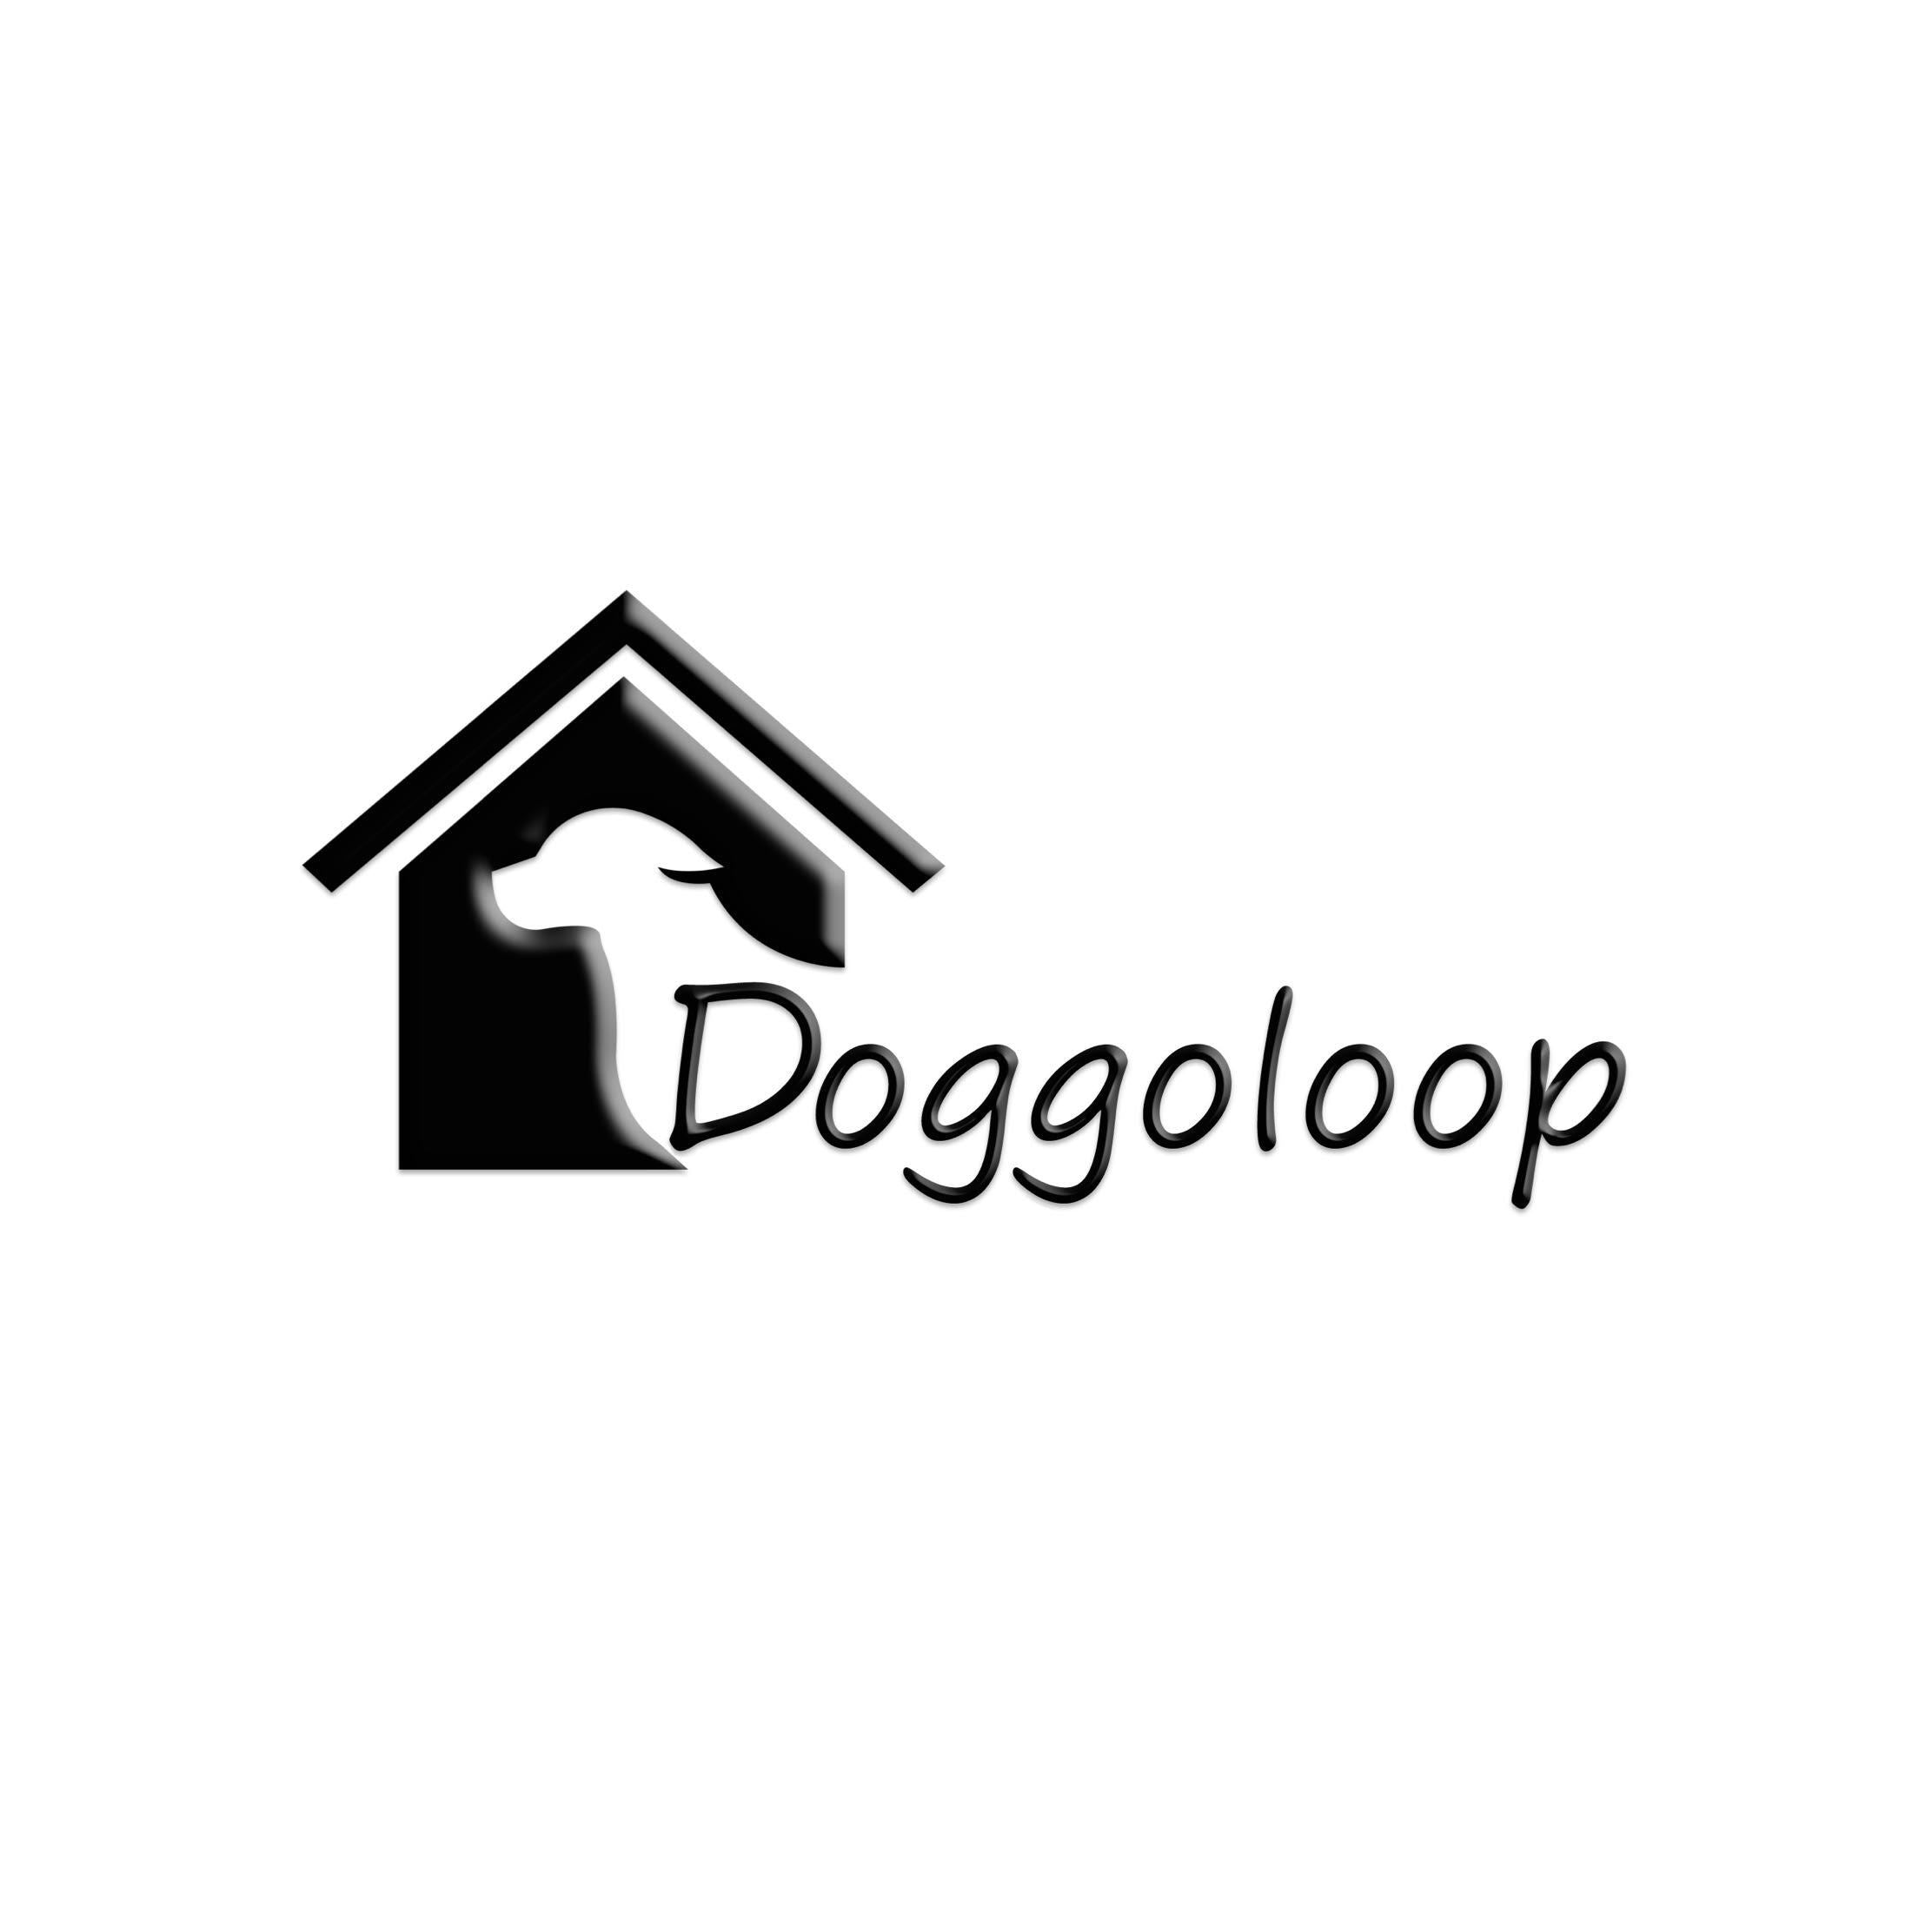 DoggoLoop